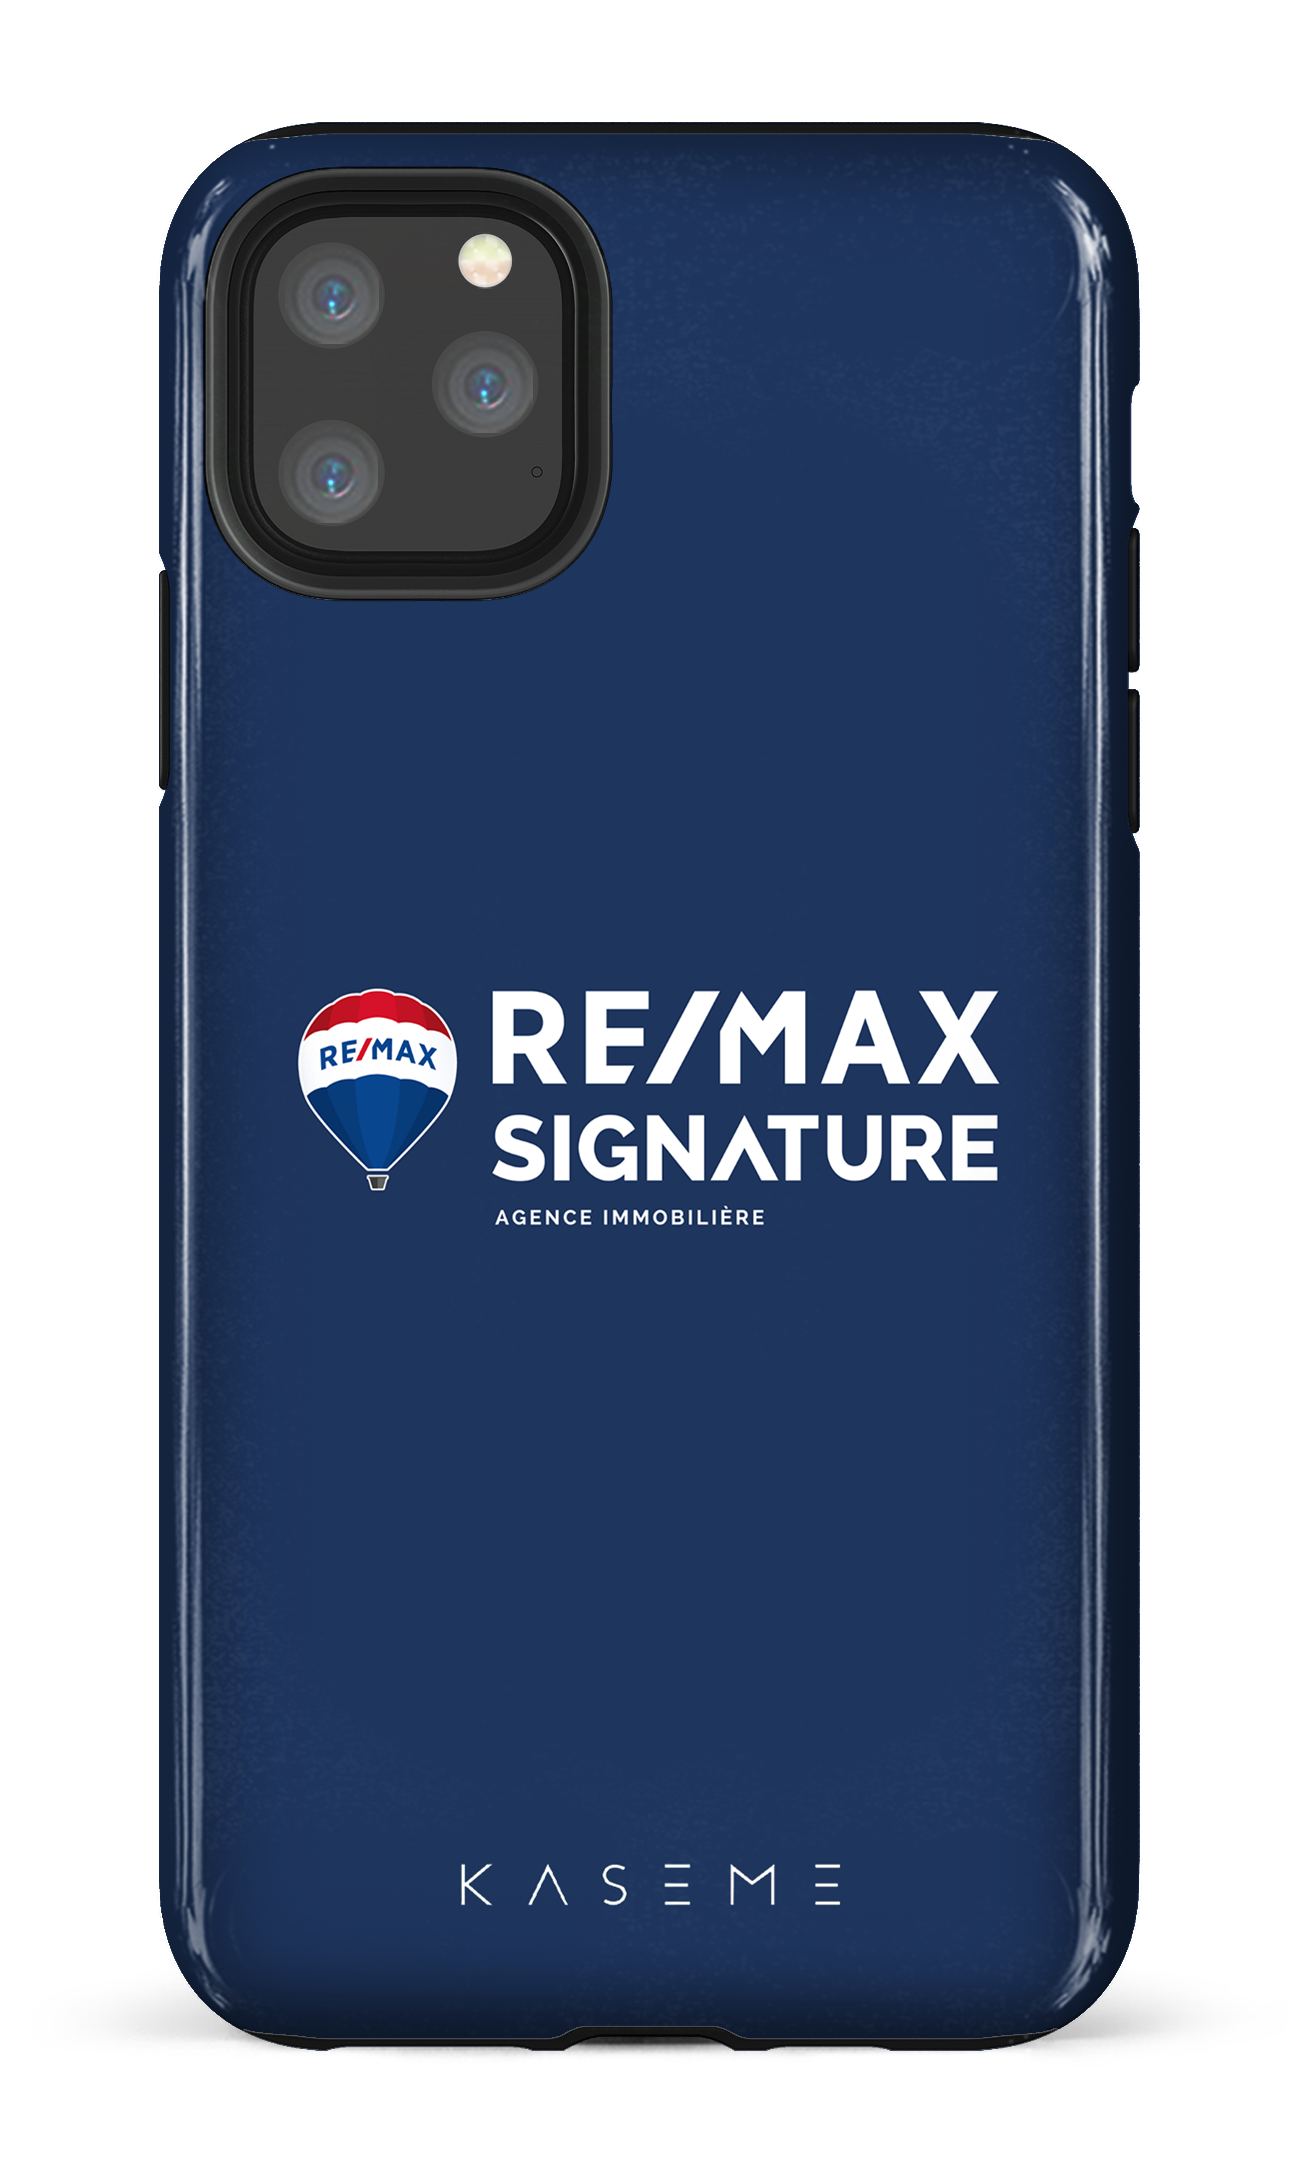 Remax Signature Bleu - iPhone 11 Pro Max